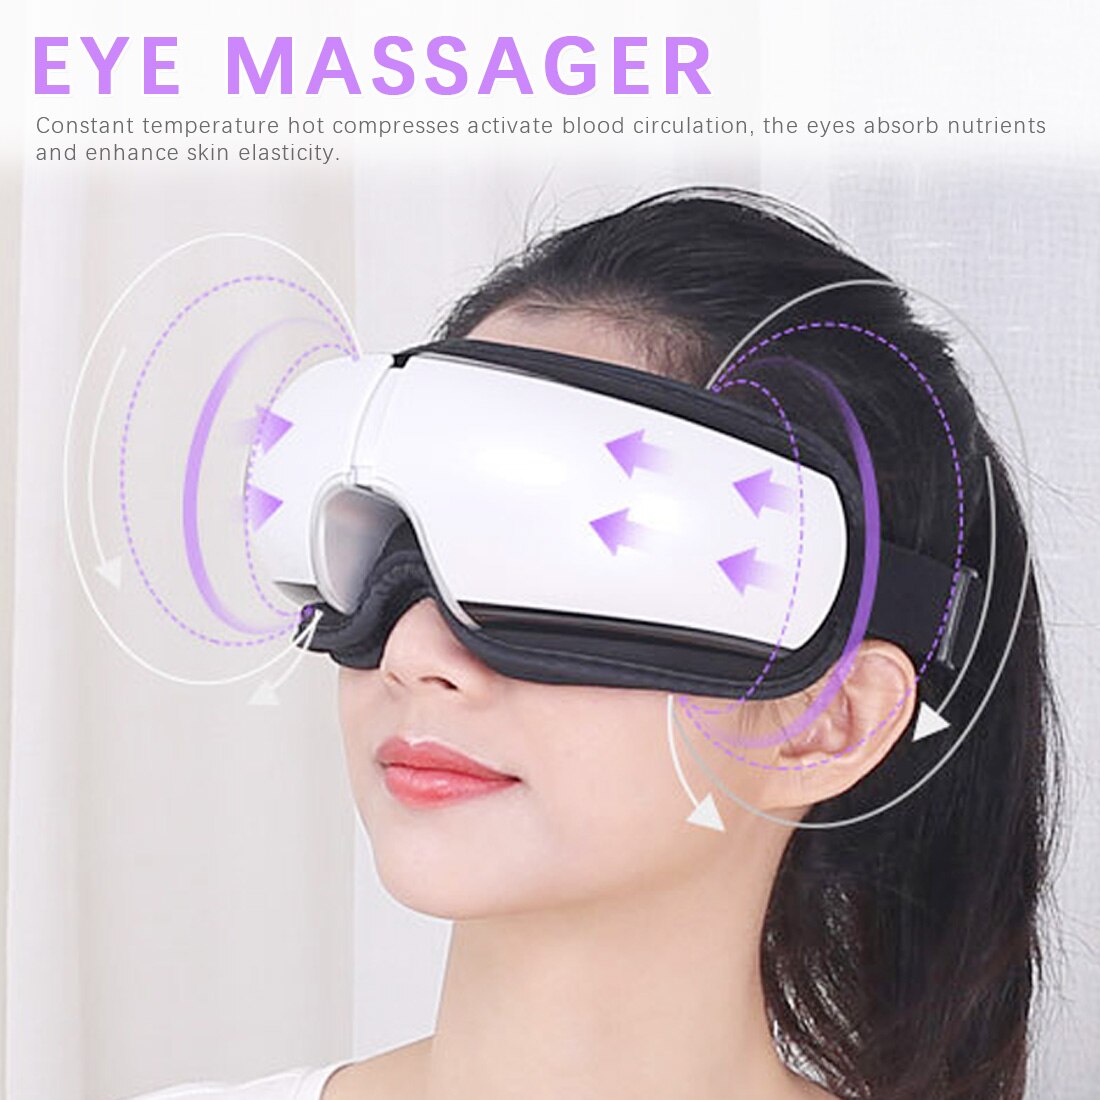 Auge Pflege Bluetooth Augen Massagegerät Vibration Spa Elektrische Musik Faltbare Luftdruck Heizung Instrument Auge Müdigkeit Massage